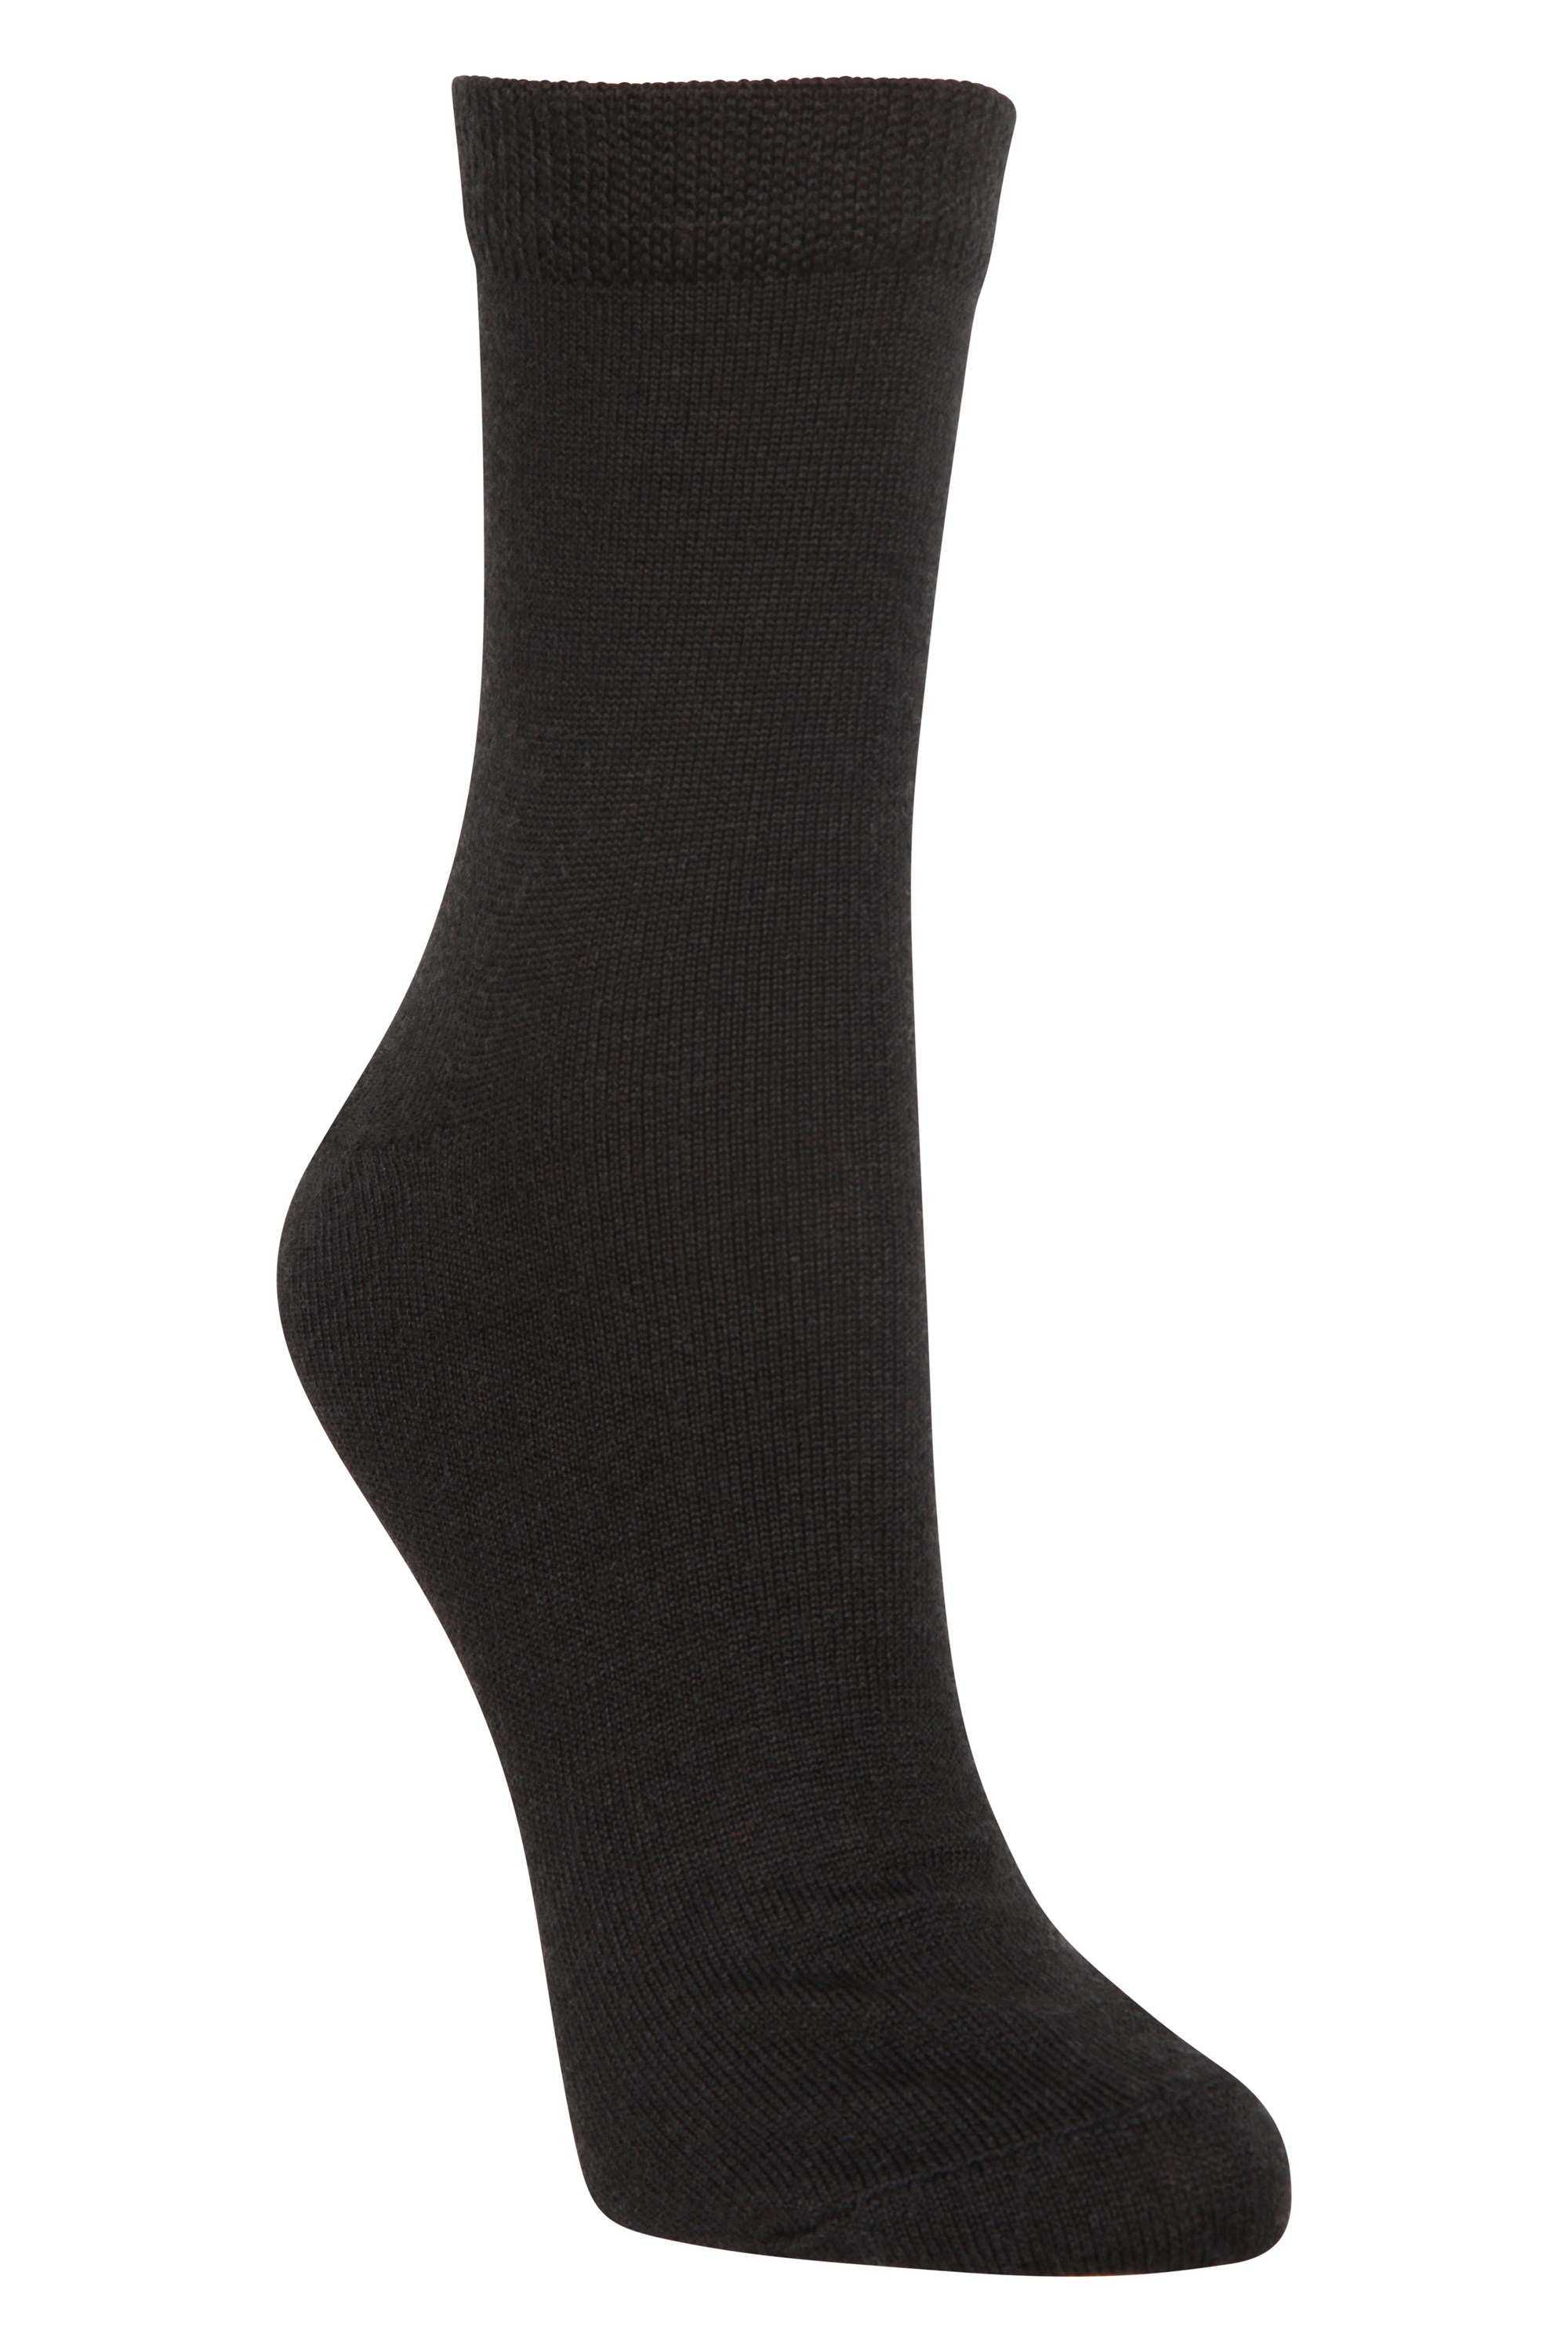 Merino Womens Quarter Length Socks